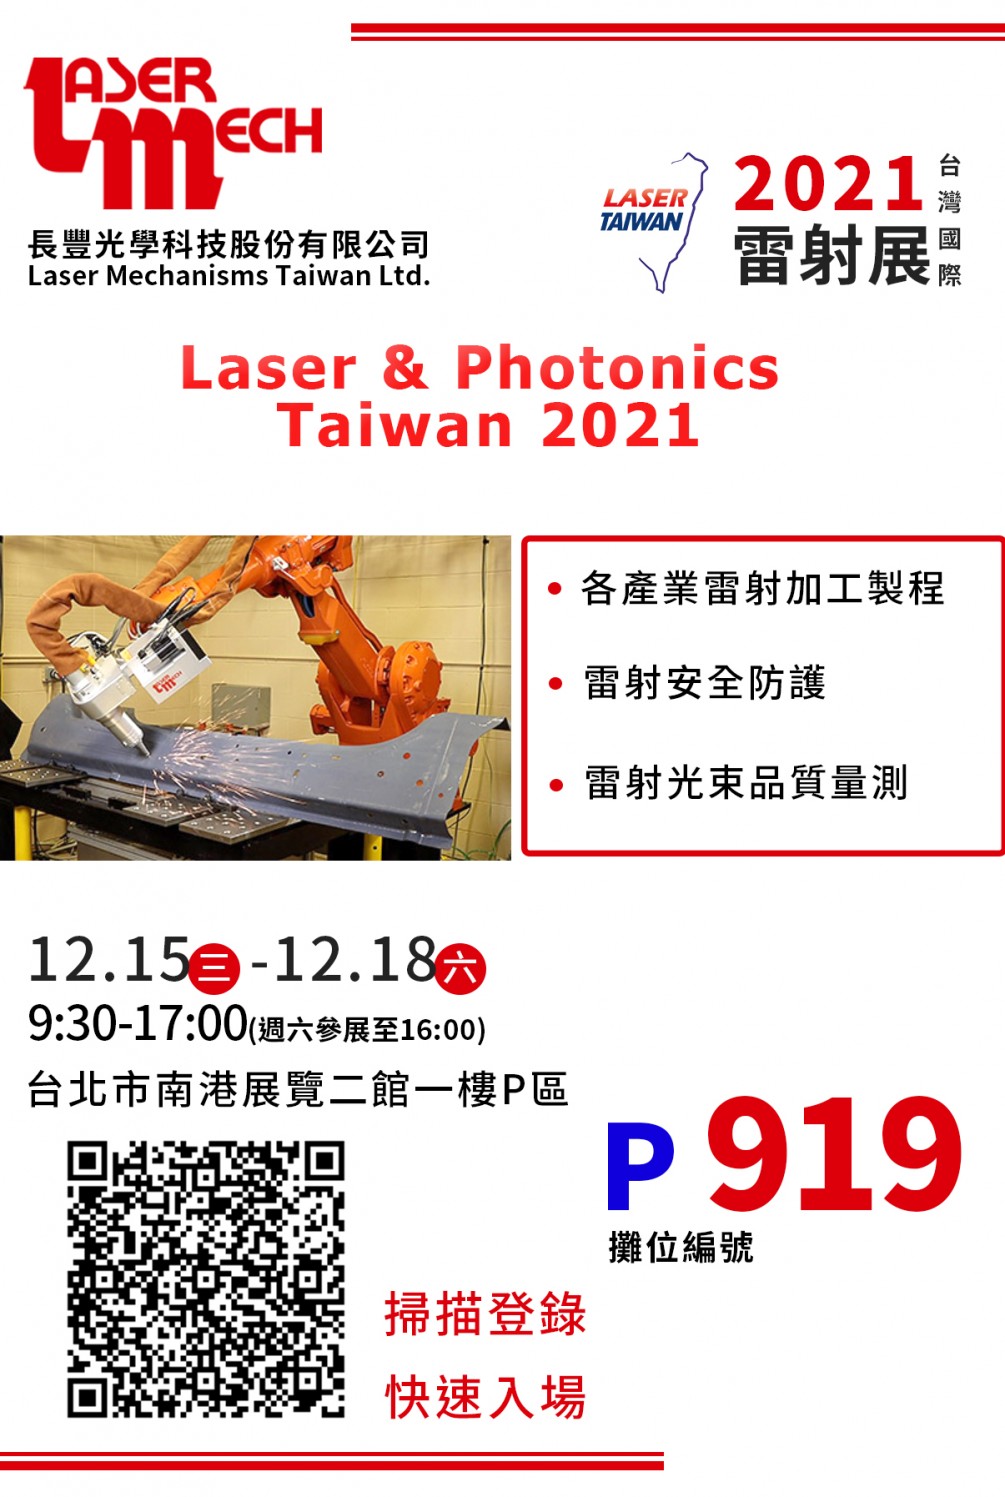 2021 台灣國際雷射展 12/15(三)~12/18(六)  攤位P919